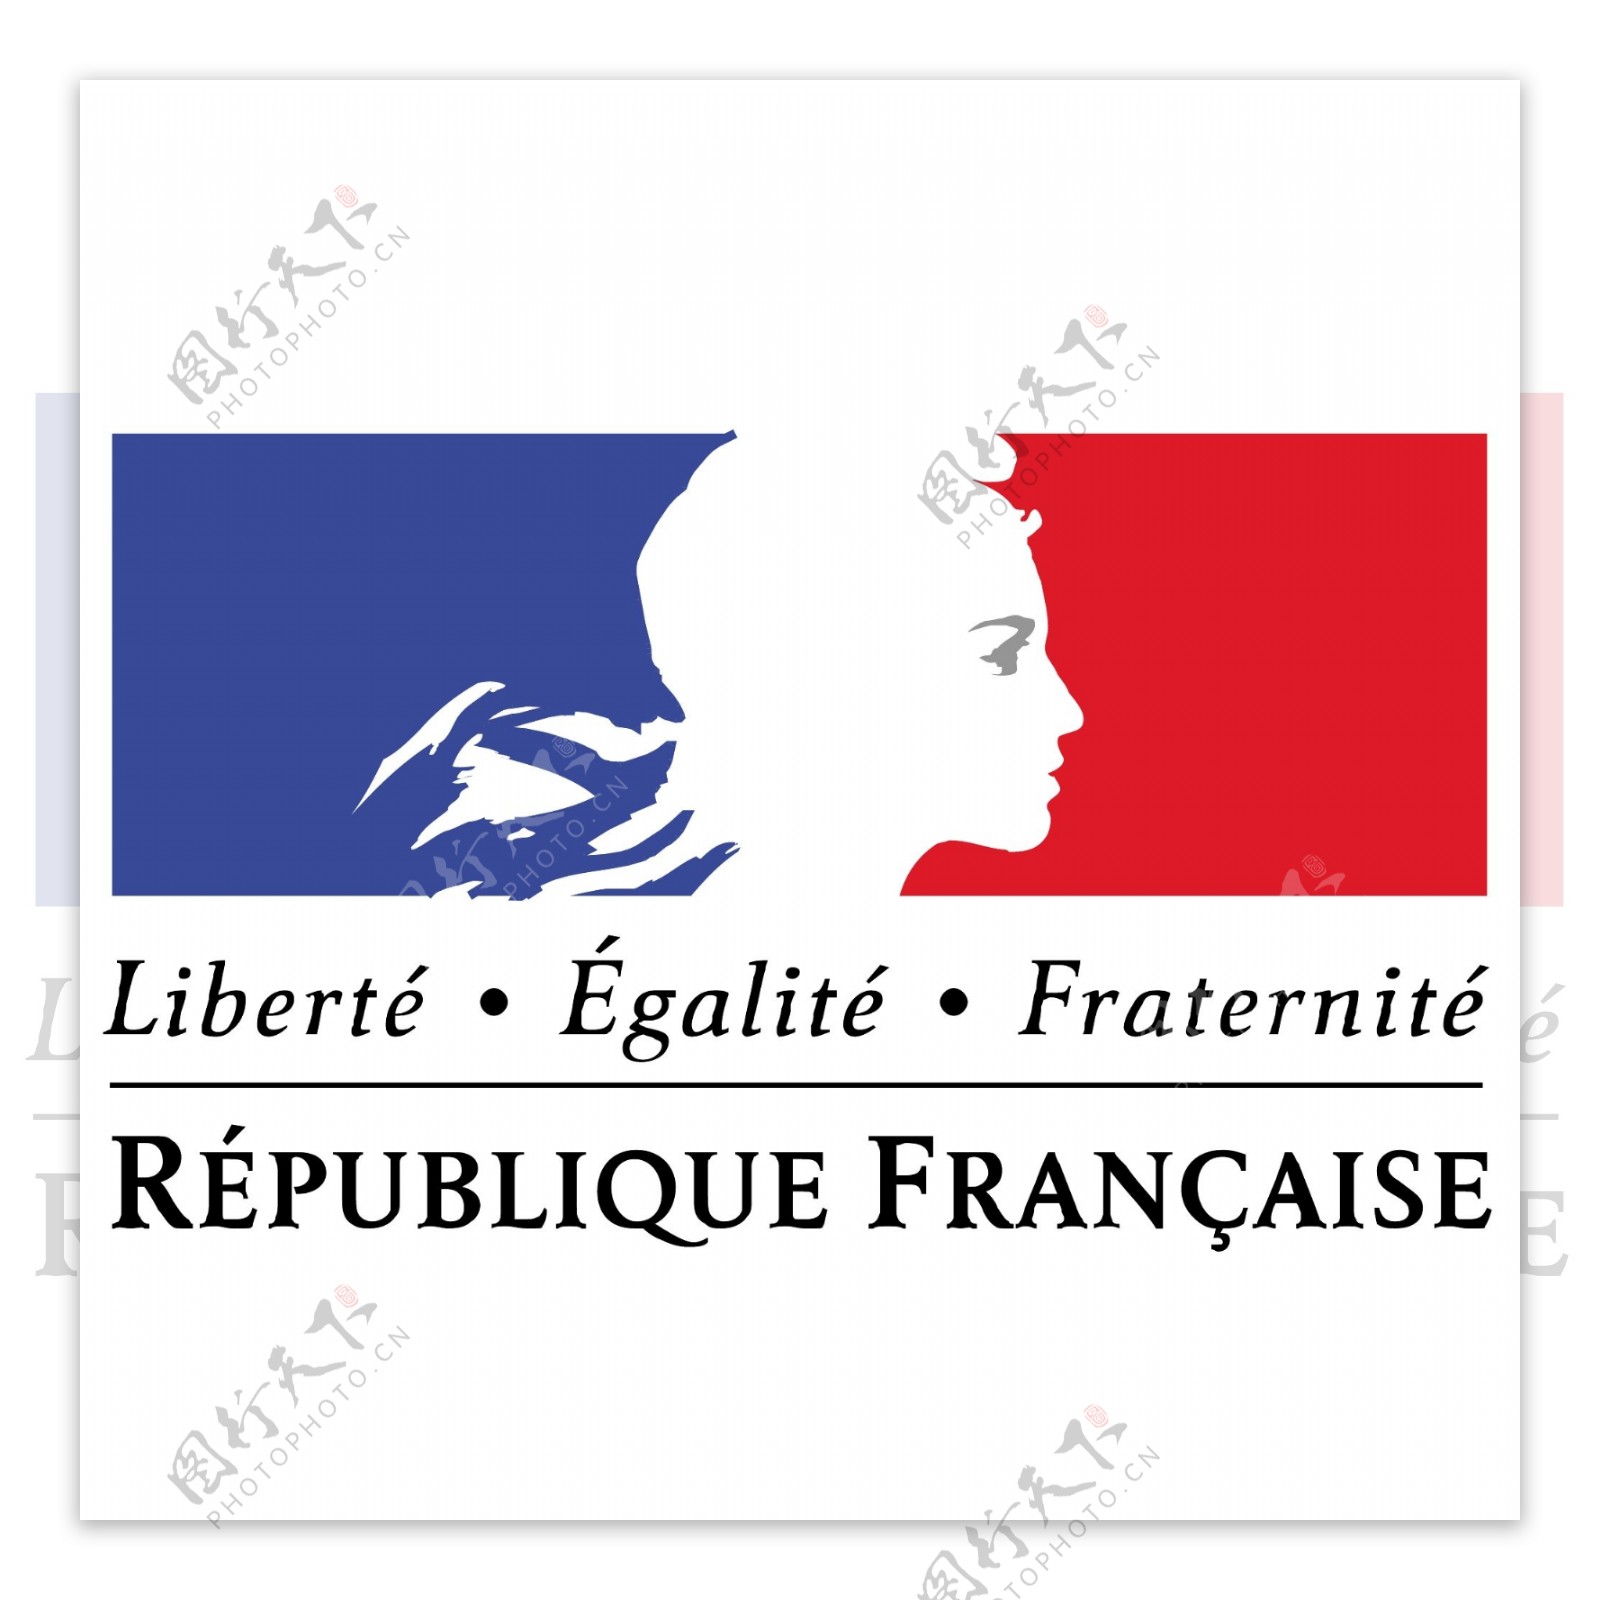 法兰西共和